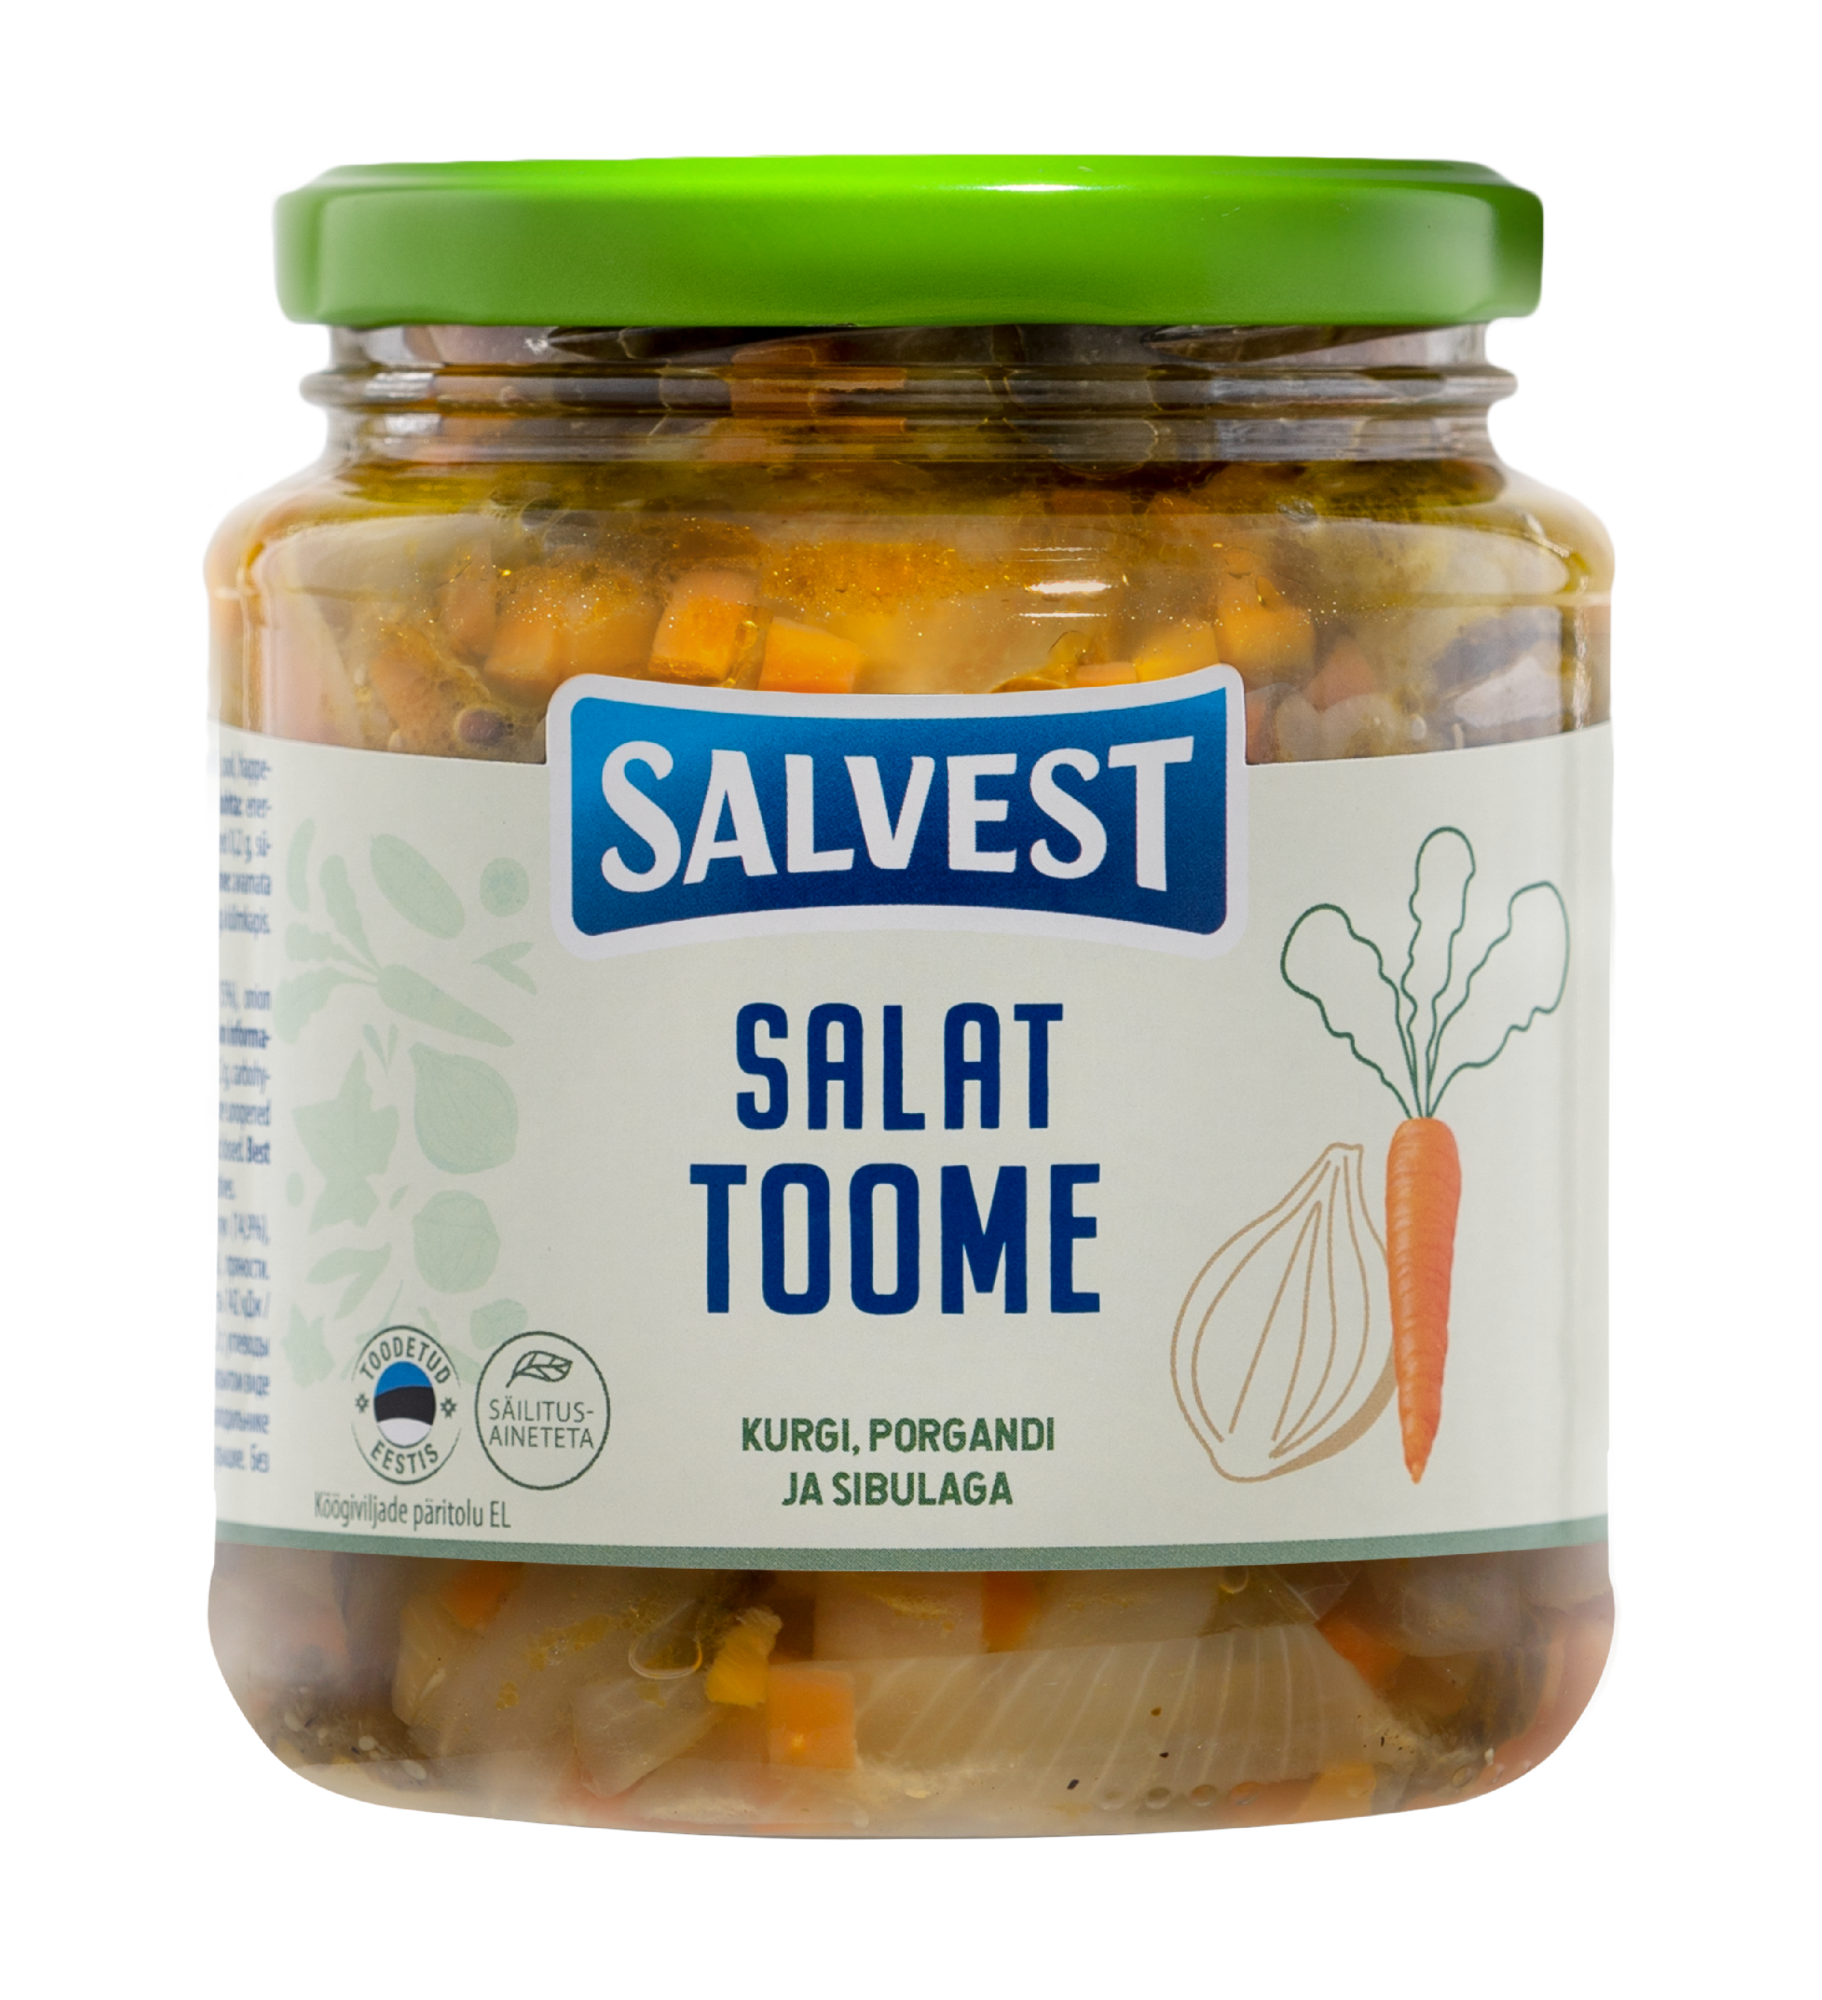 SALVEST Salat “Toome”